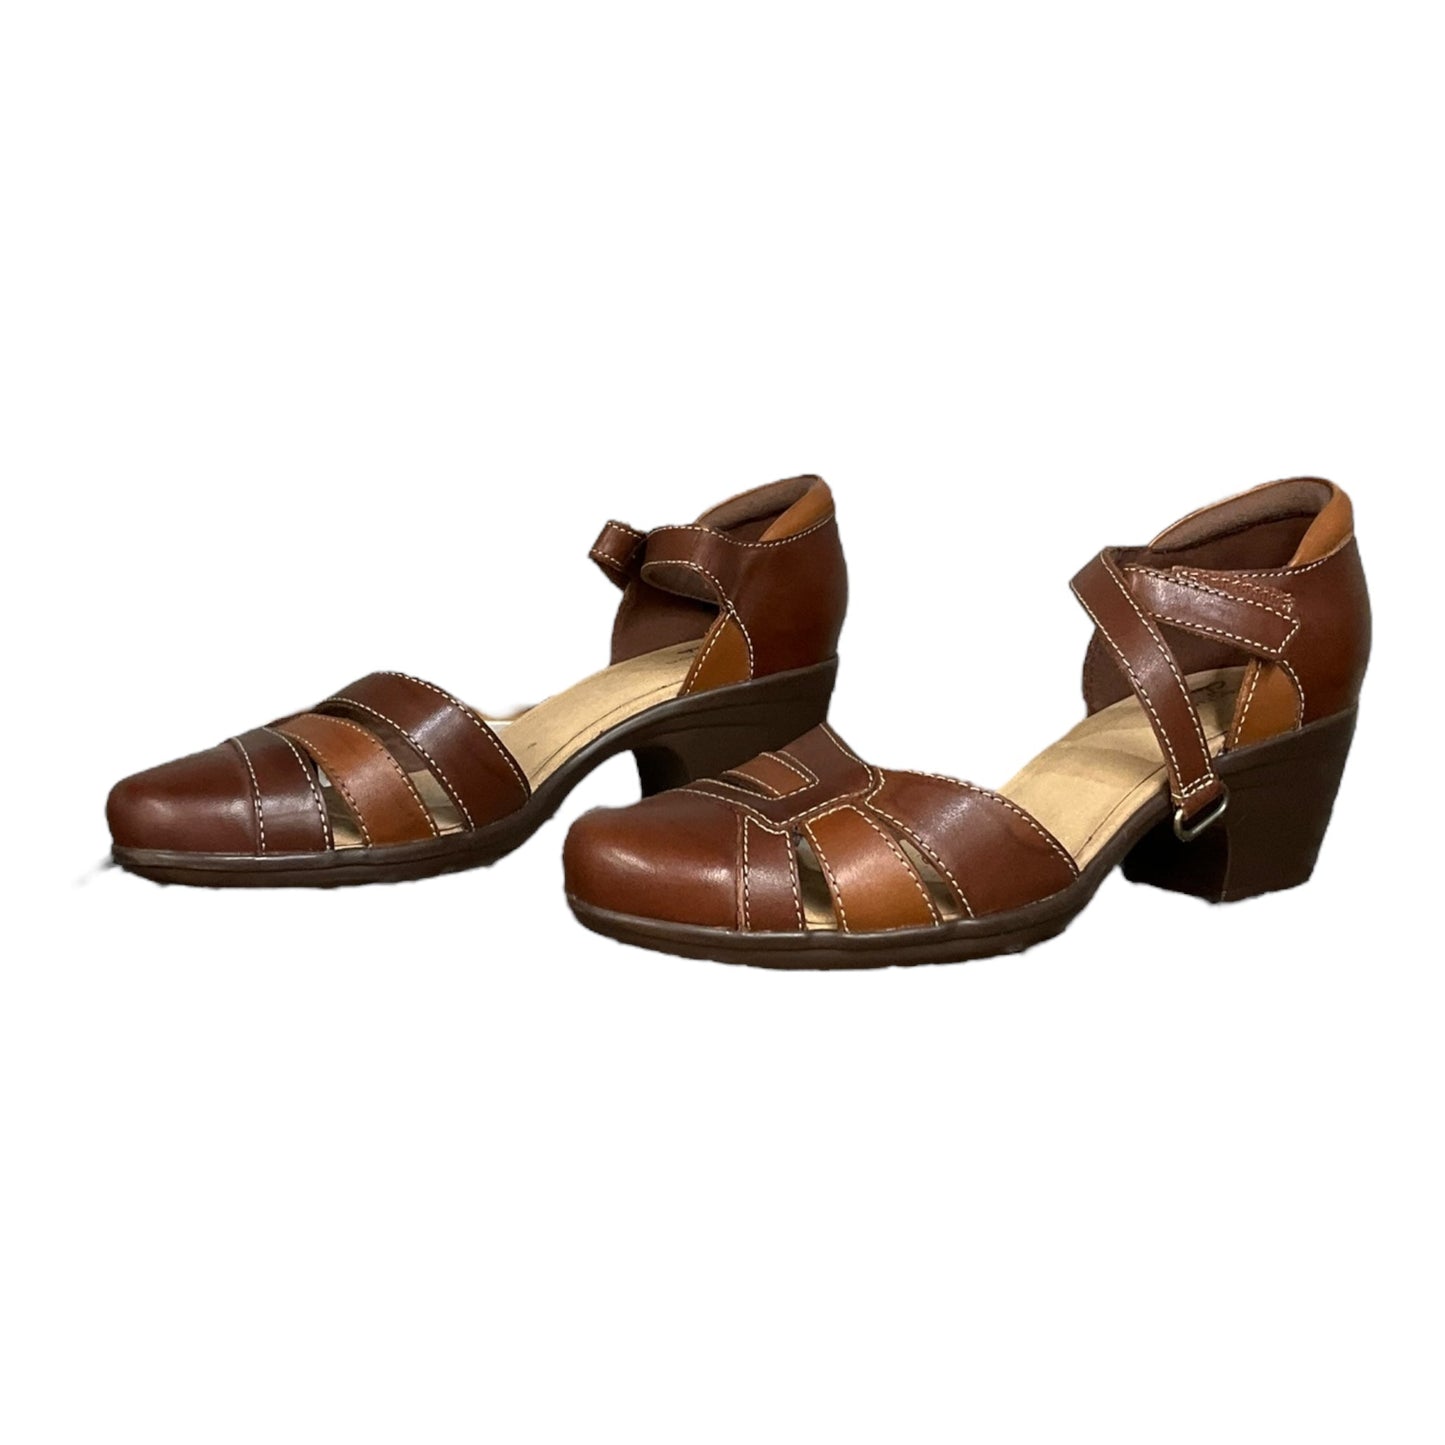 Brown Shoes Heels Block Clarks, Size 7.5